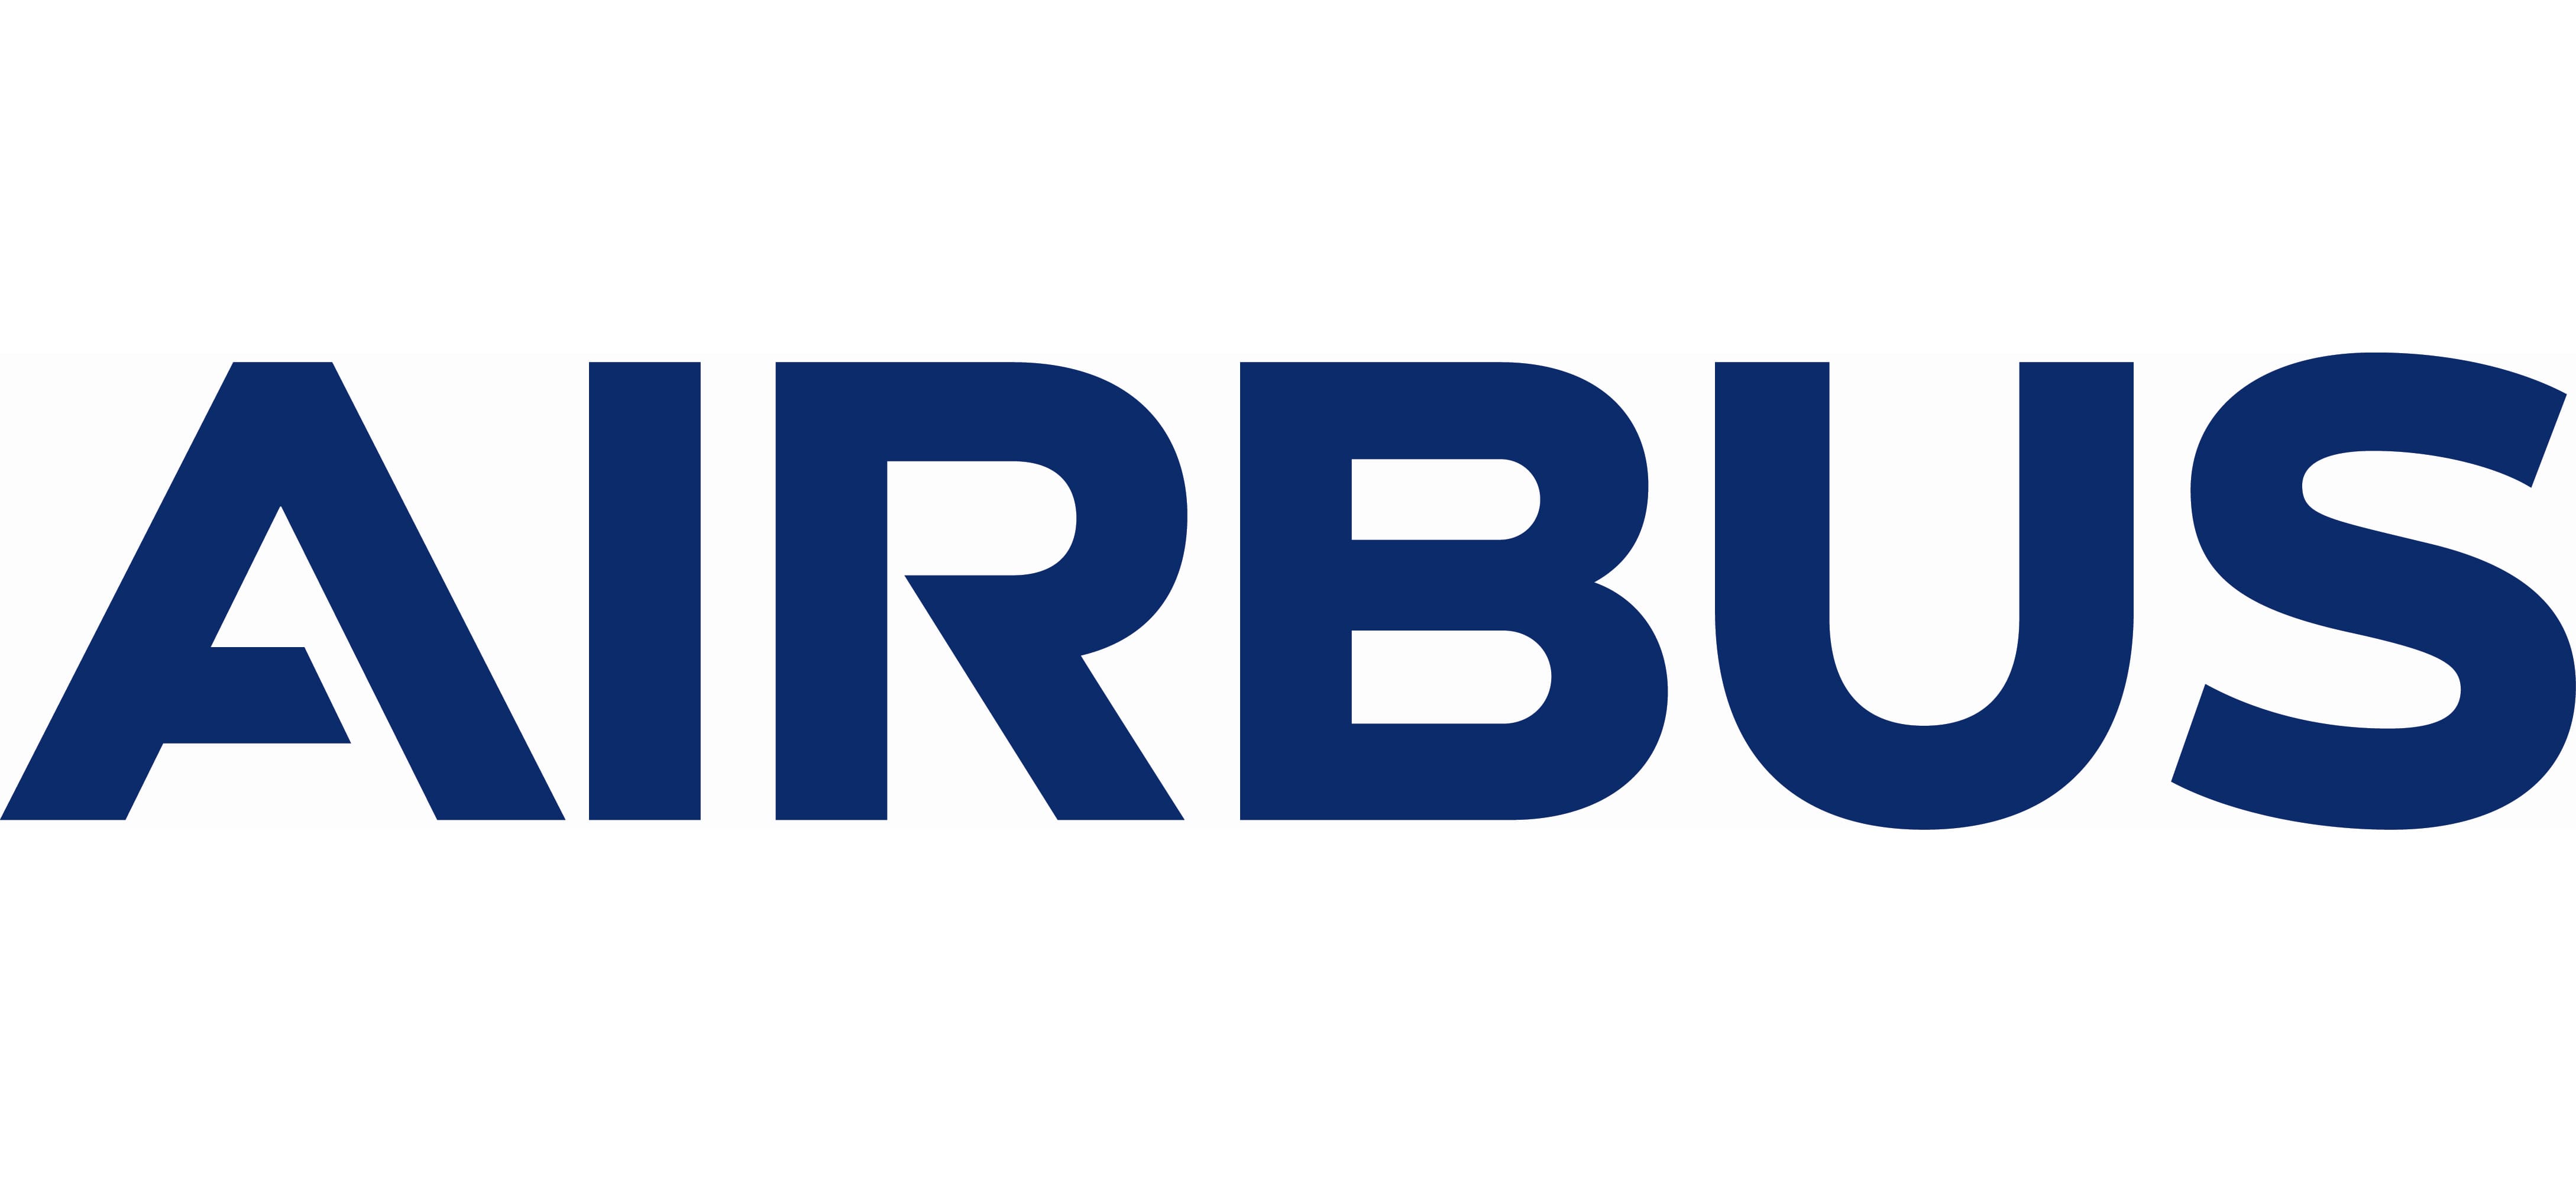 Airbus-logo